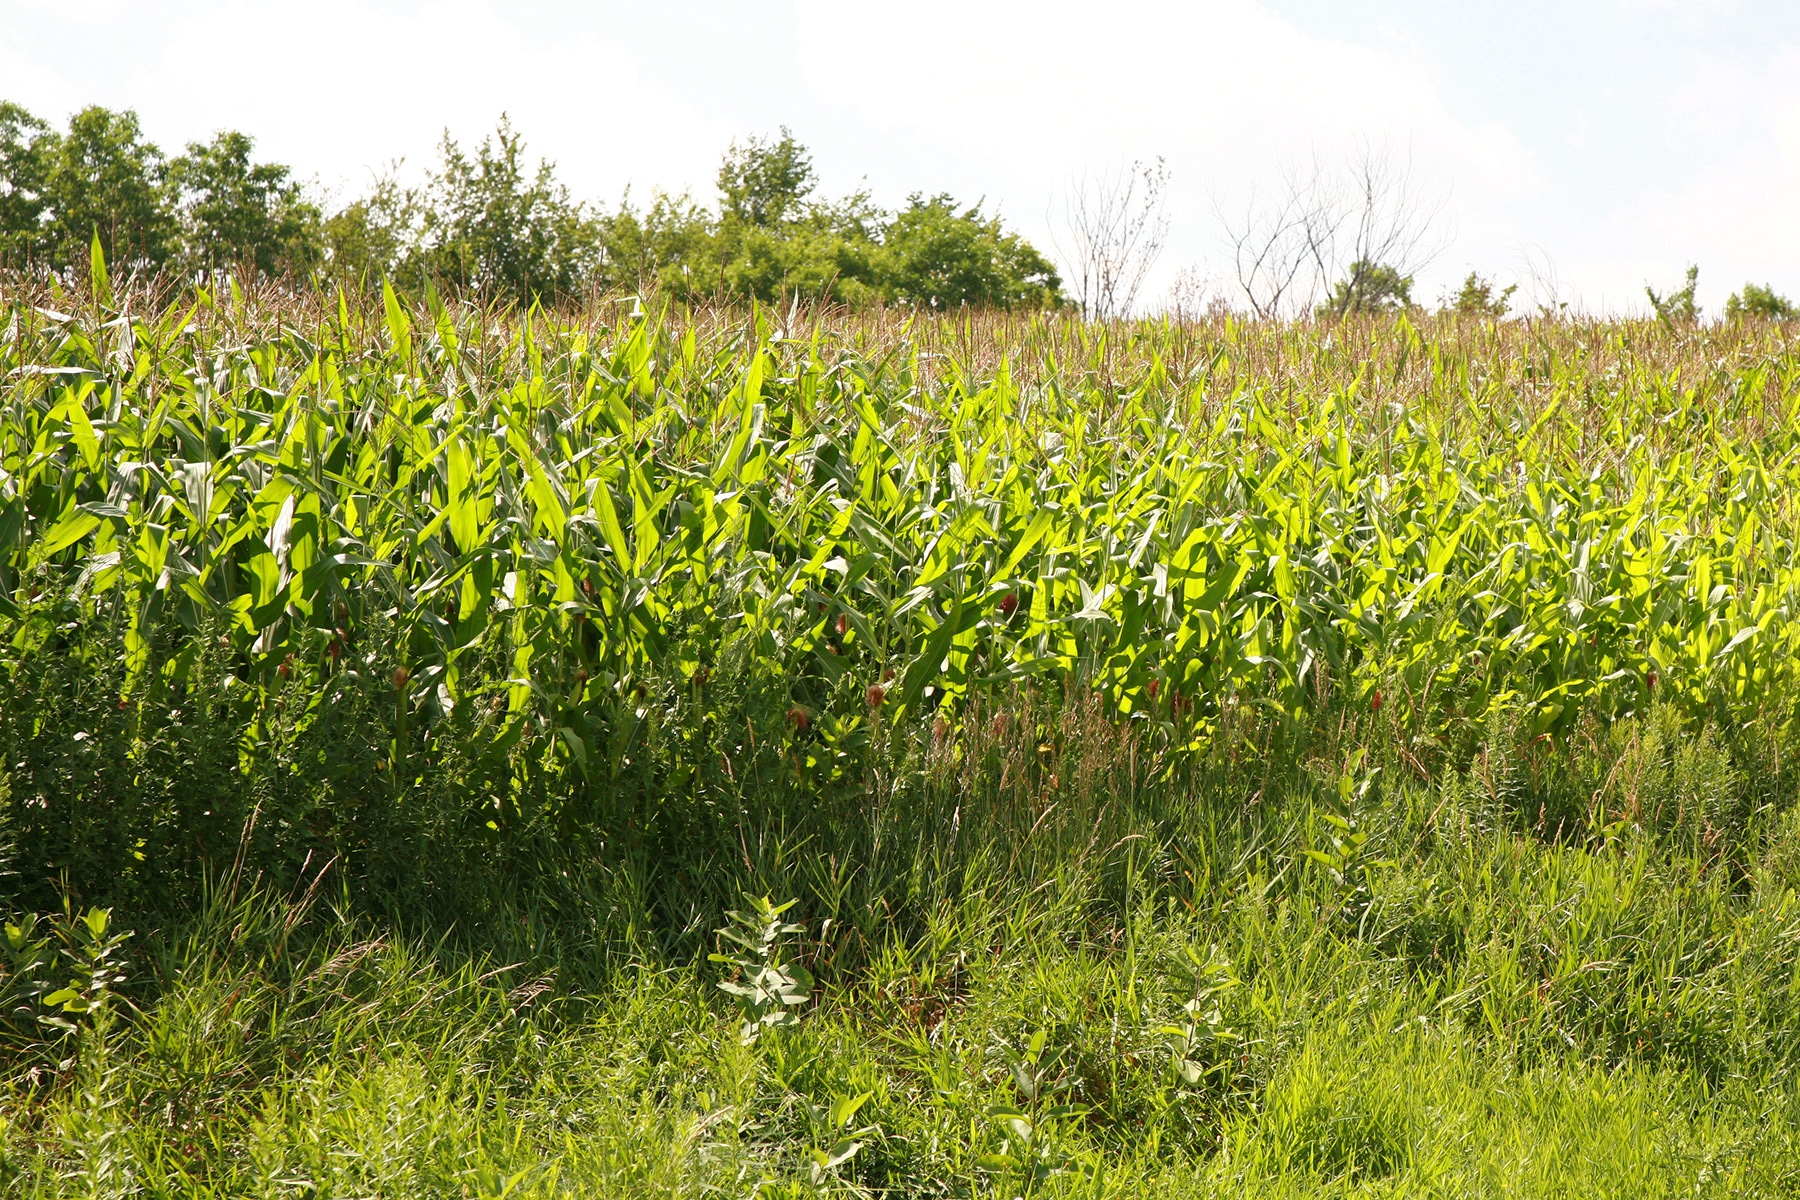 A field pf corn.